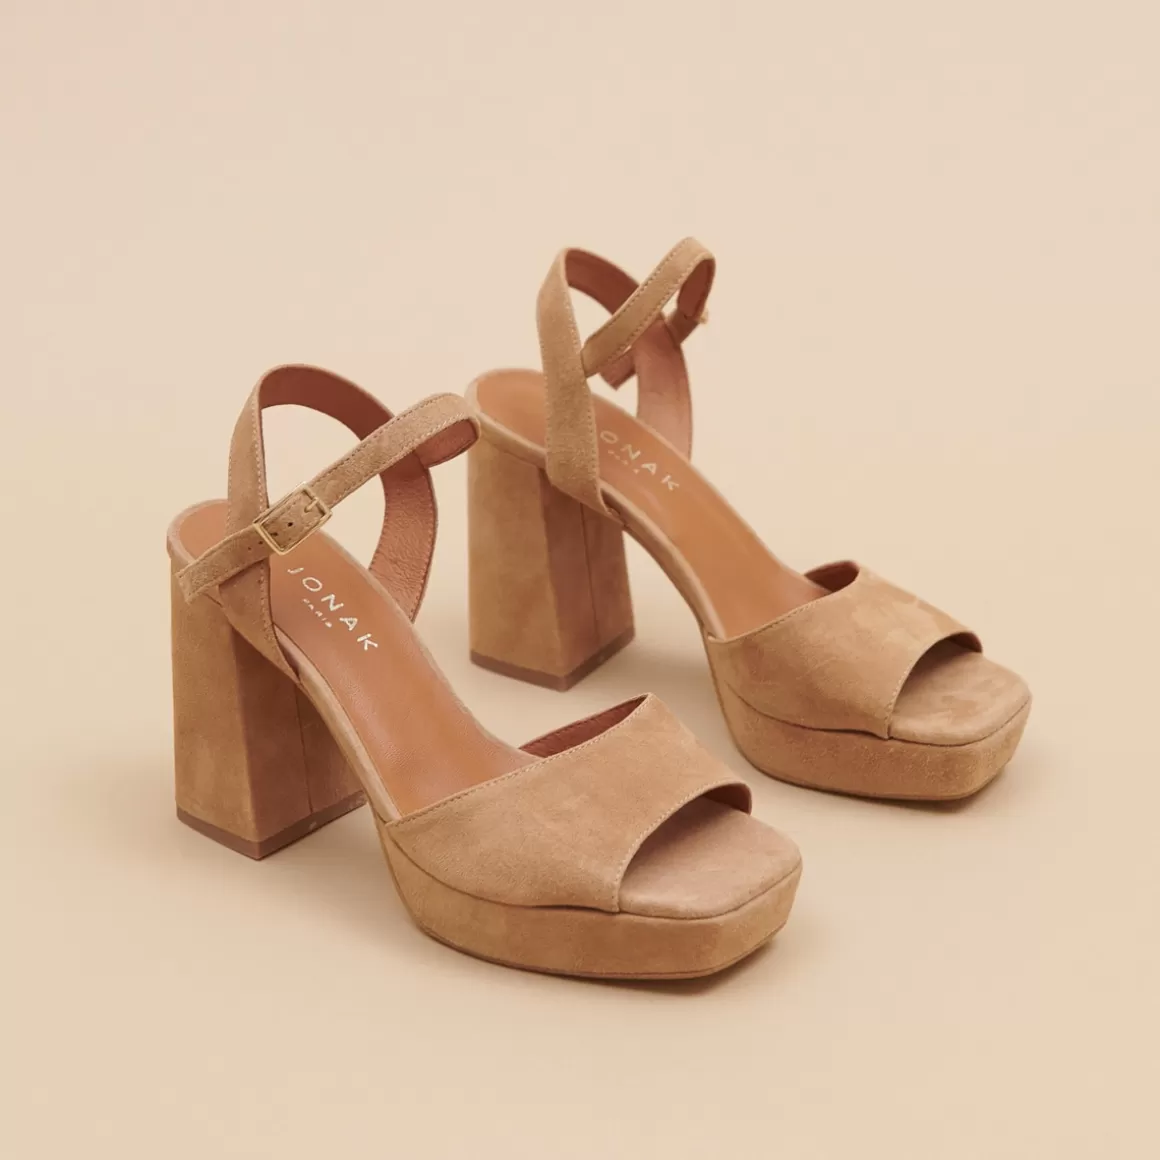 High heel sandals with open toe<Jonak Best Sale